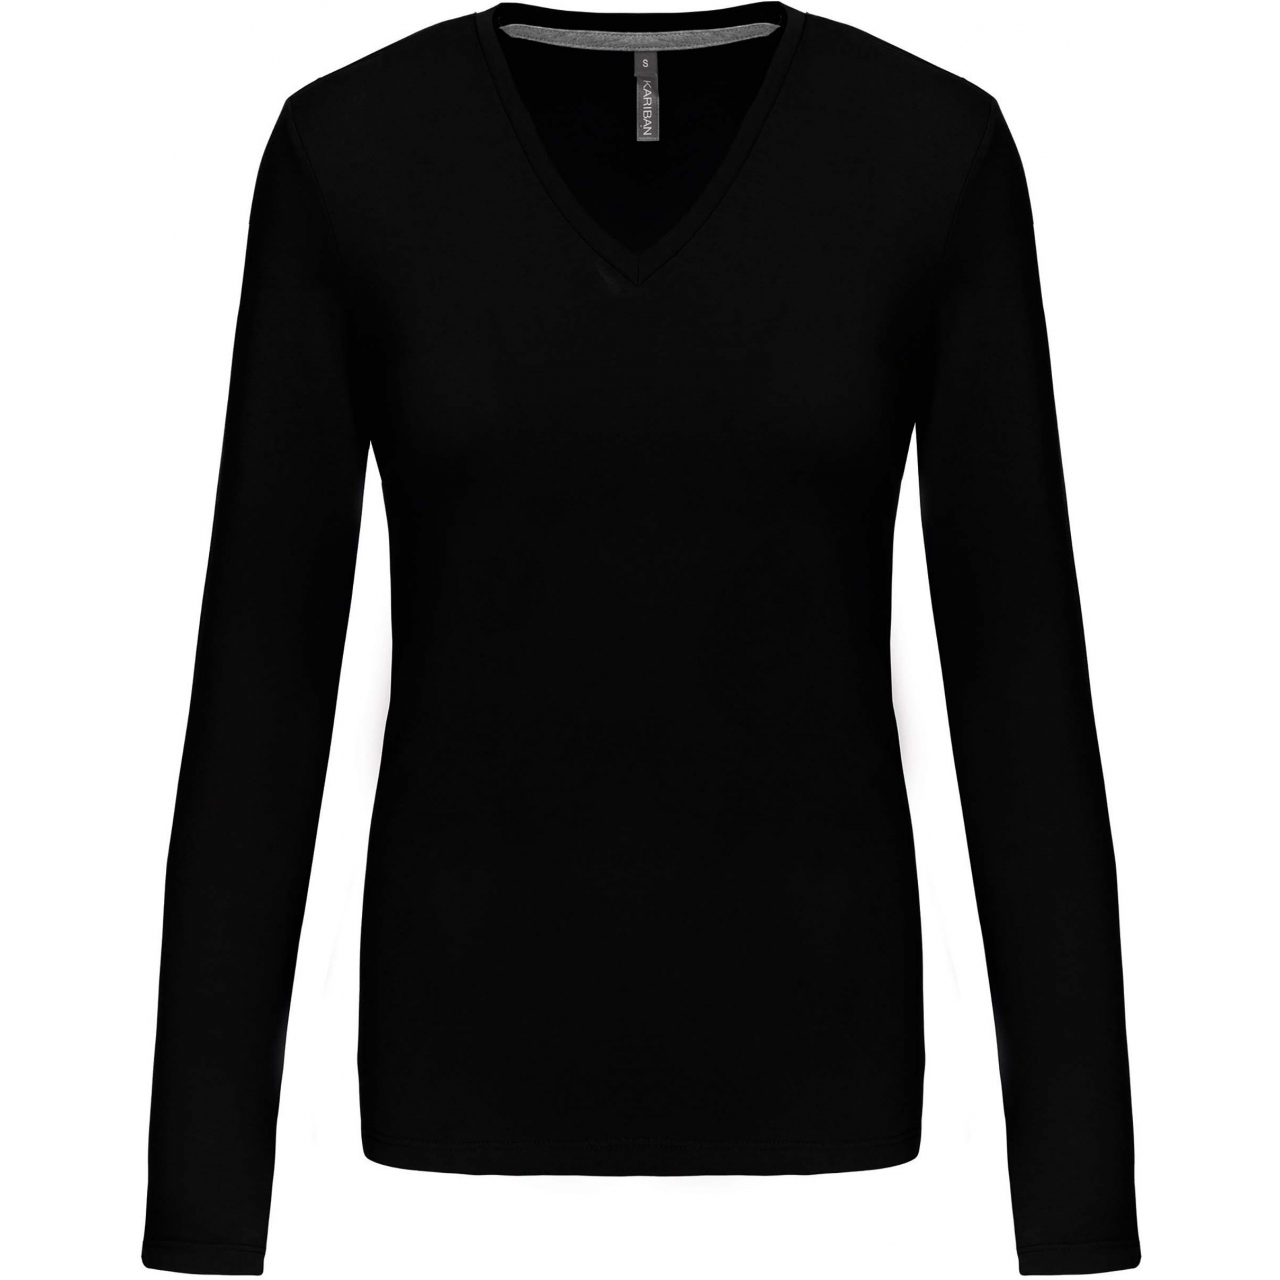 Dámské tričko Kariban dlouhý rukáv V-neck - černé, XL